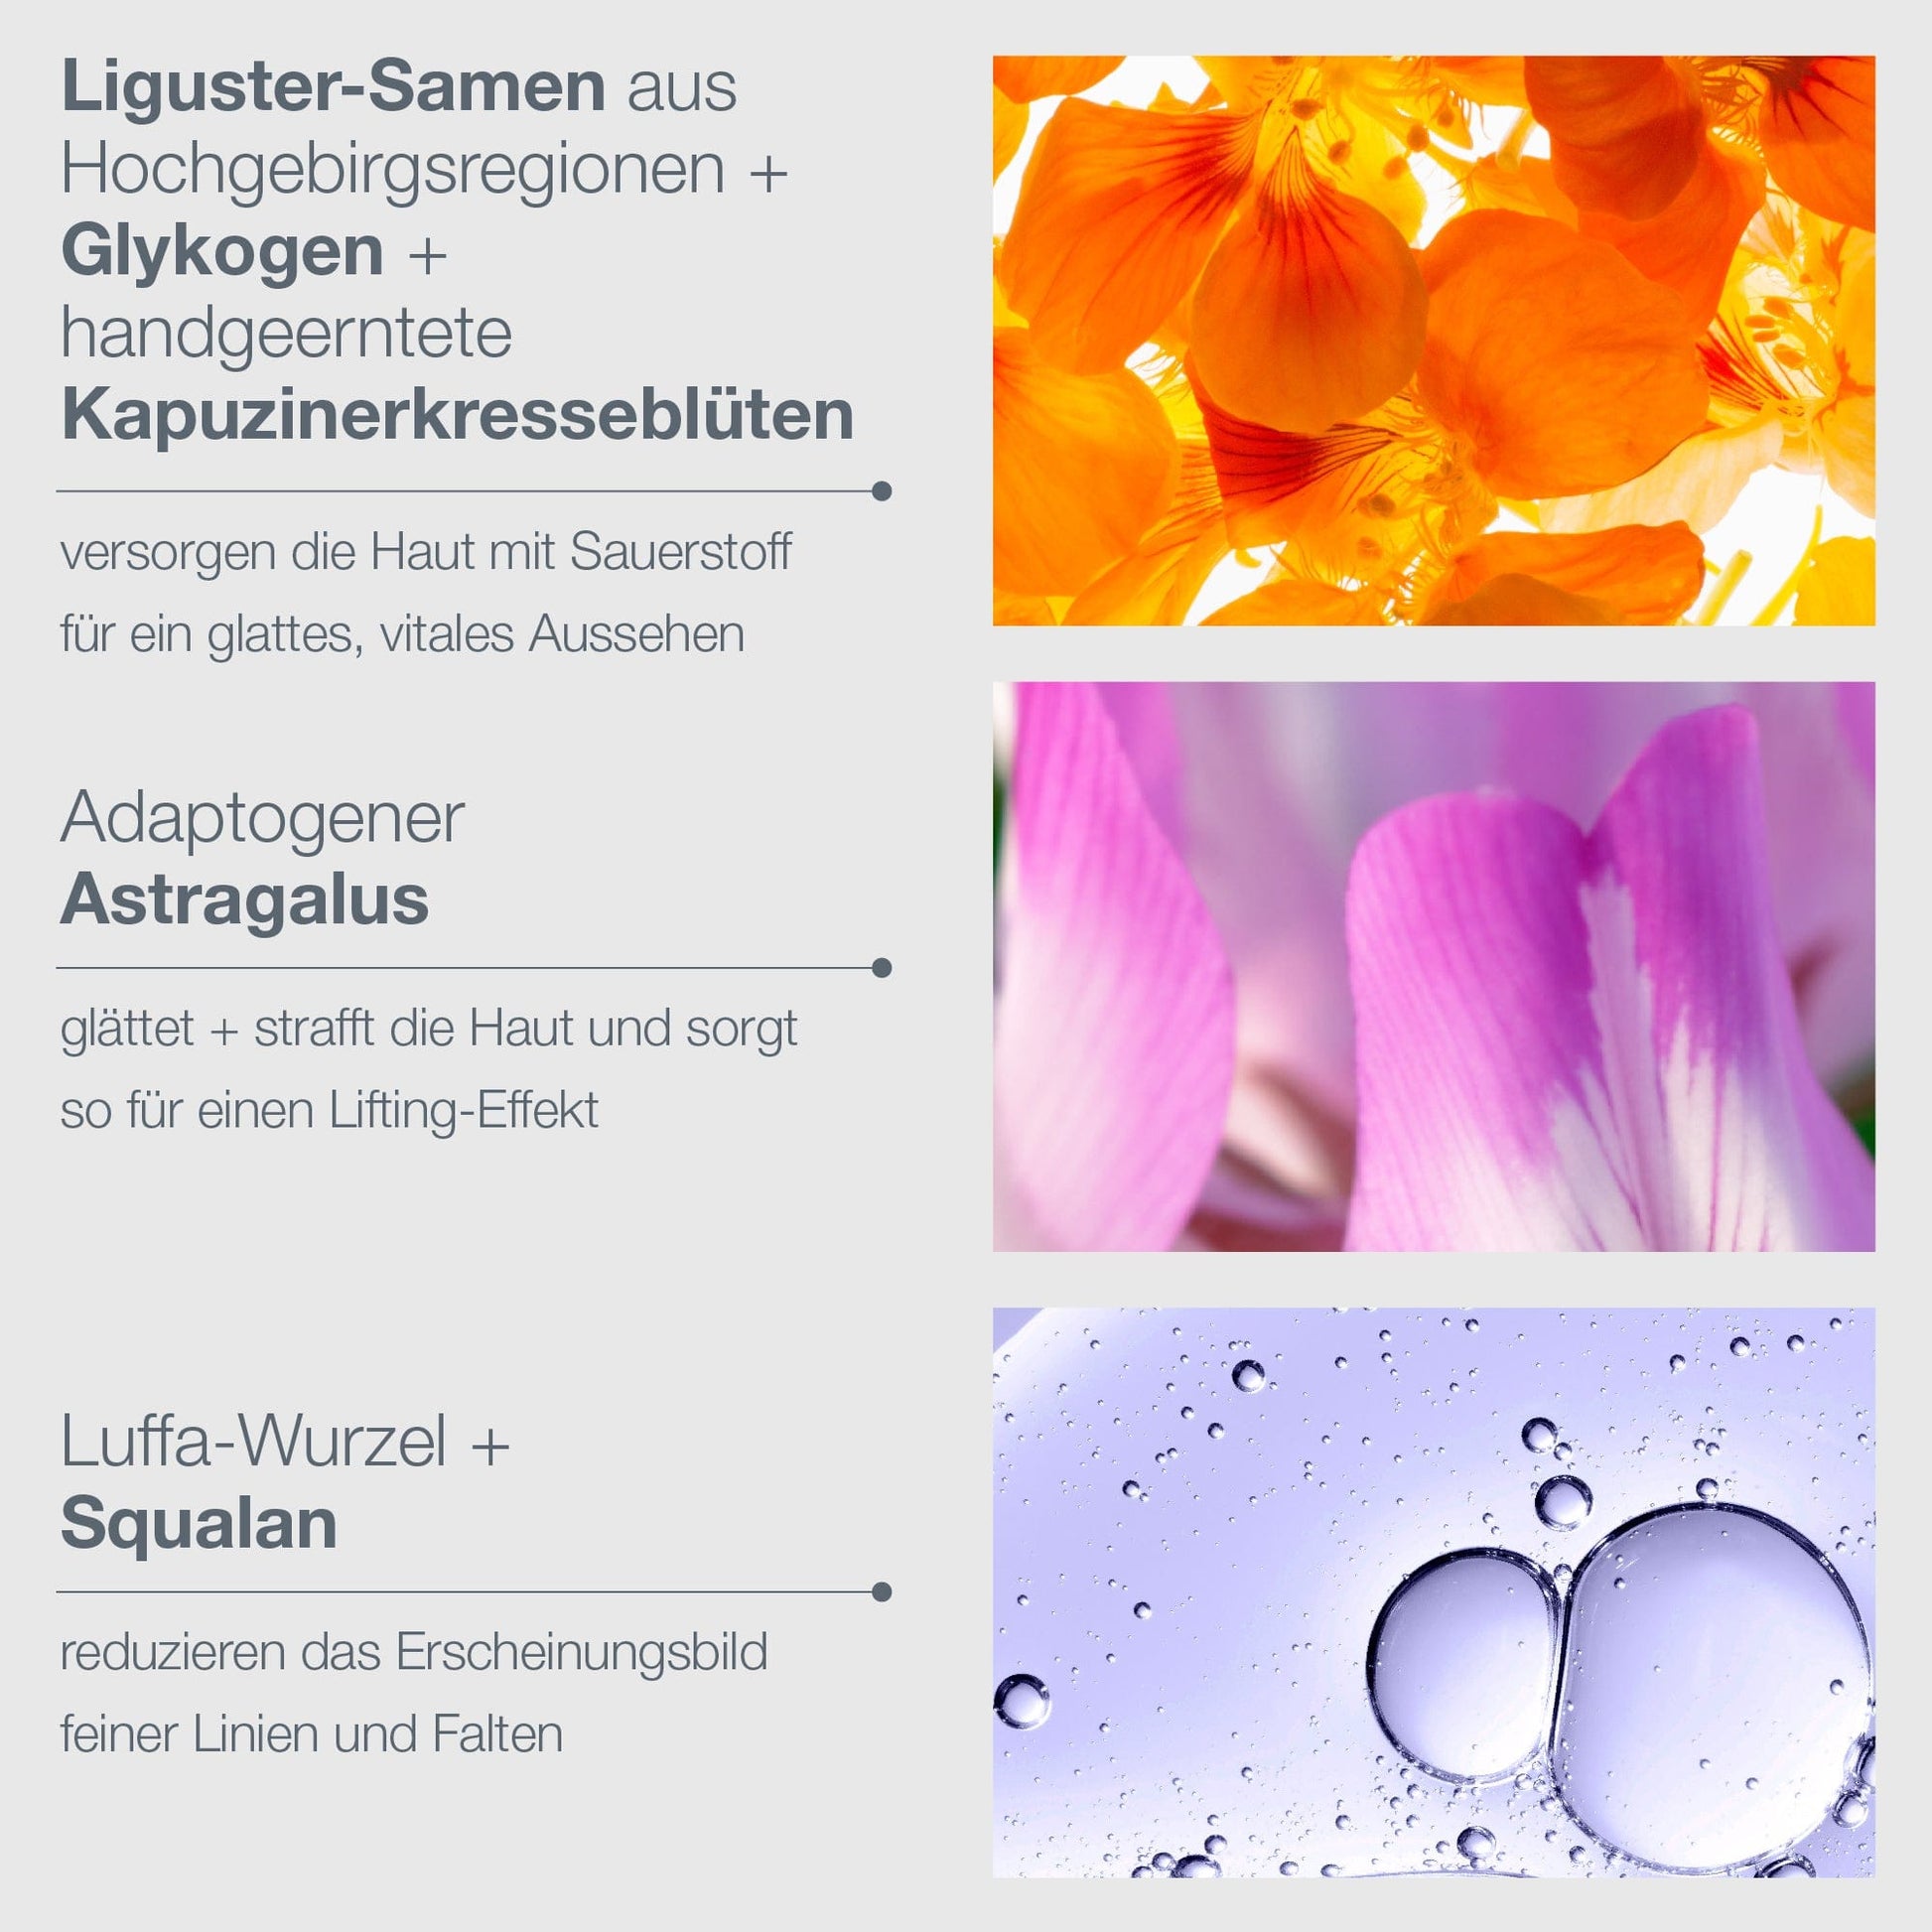 Vier Quadranten mit jeweils Text und Bild, die Inhaltsstoffe und Vorteile einer Hautpflegeserie darstellen, und Nahaufnahmen von Blüten und Wassertröpfchen.